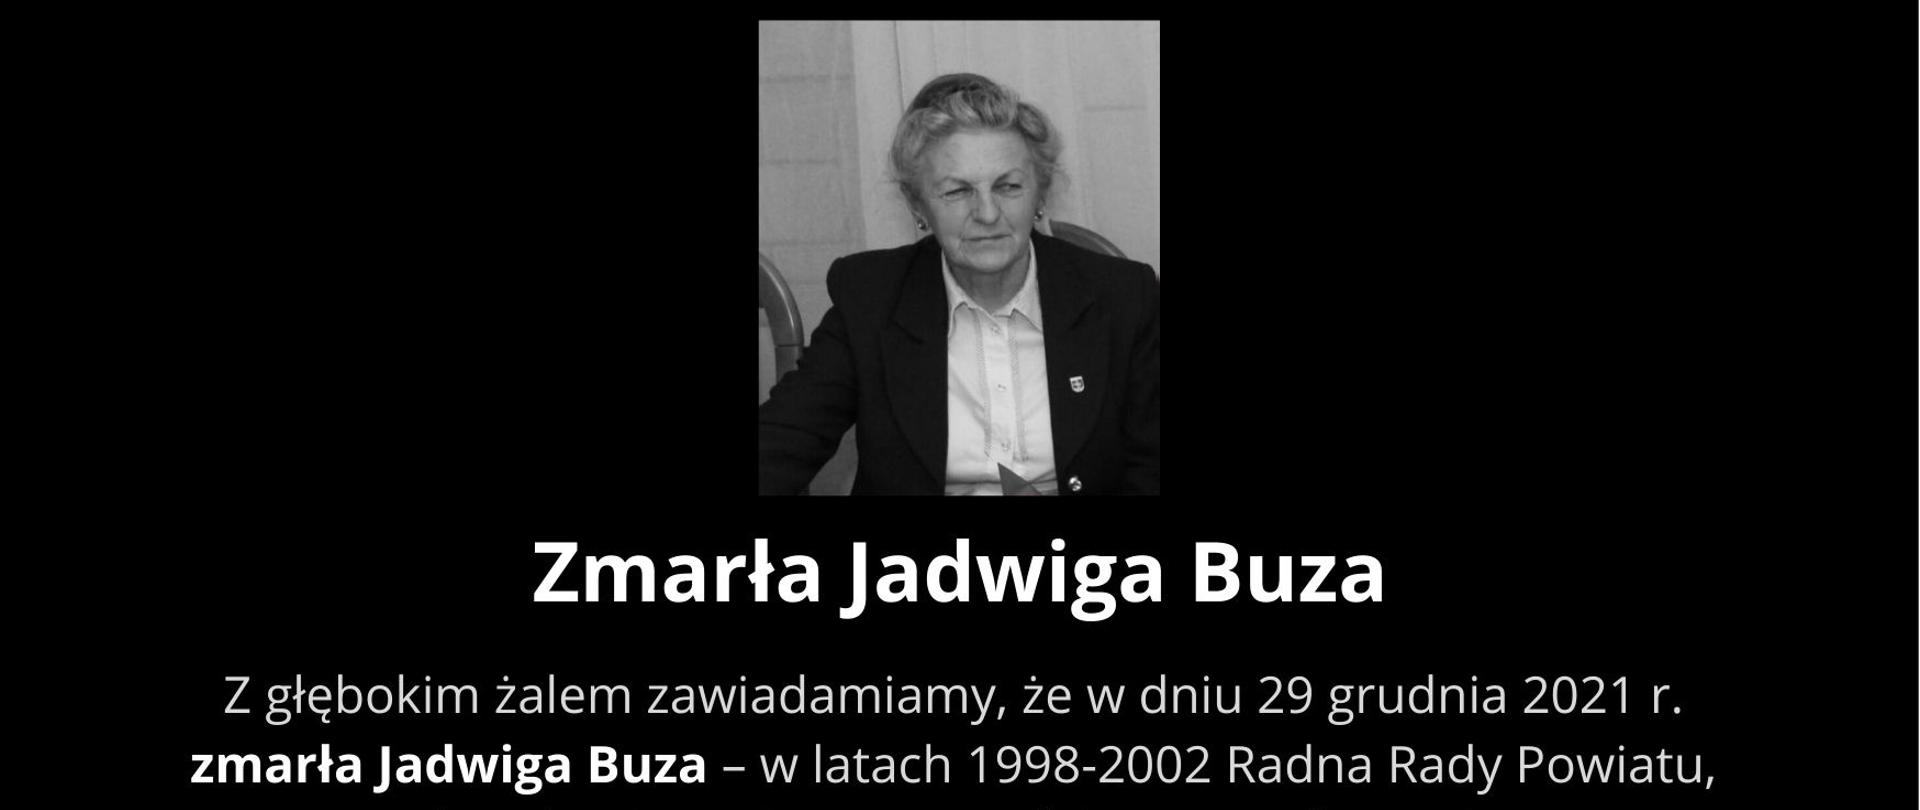 Z głębokim żalem zawiadamiamy, że w dniu 29 grudnia 2021 r. zmarła Jadwiga Buza – w latach 1998-2002 Radna Rady Powiatu, a w latach 2010-2018 Przewodnicząca Rady Powiatu.